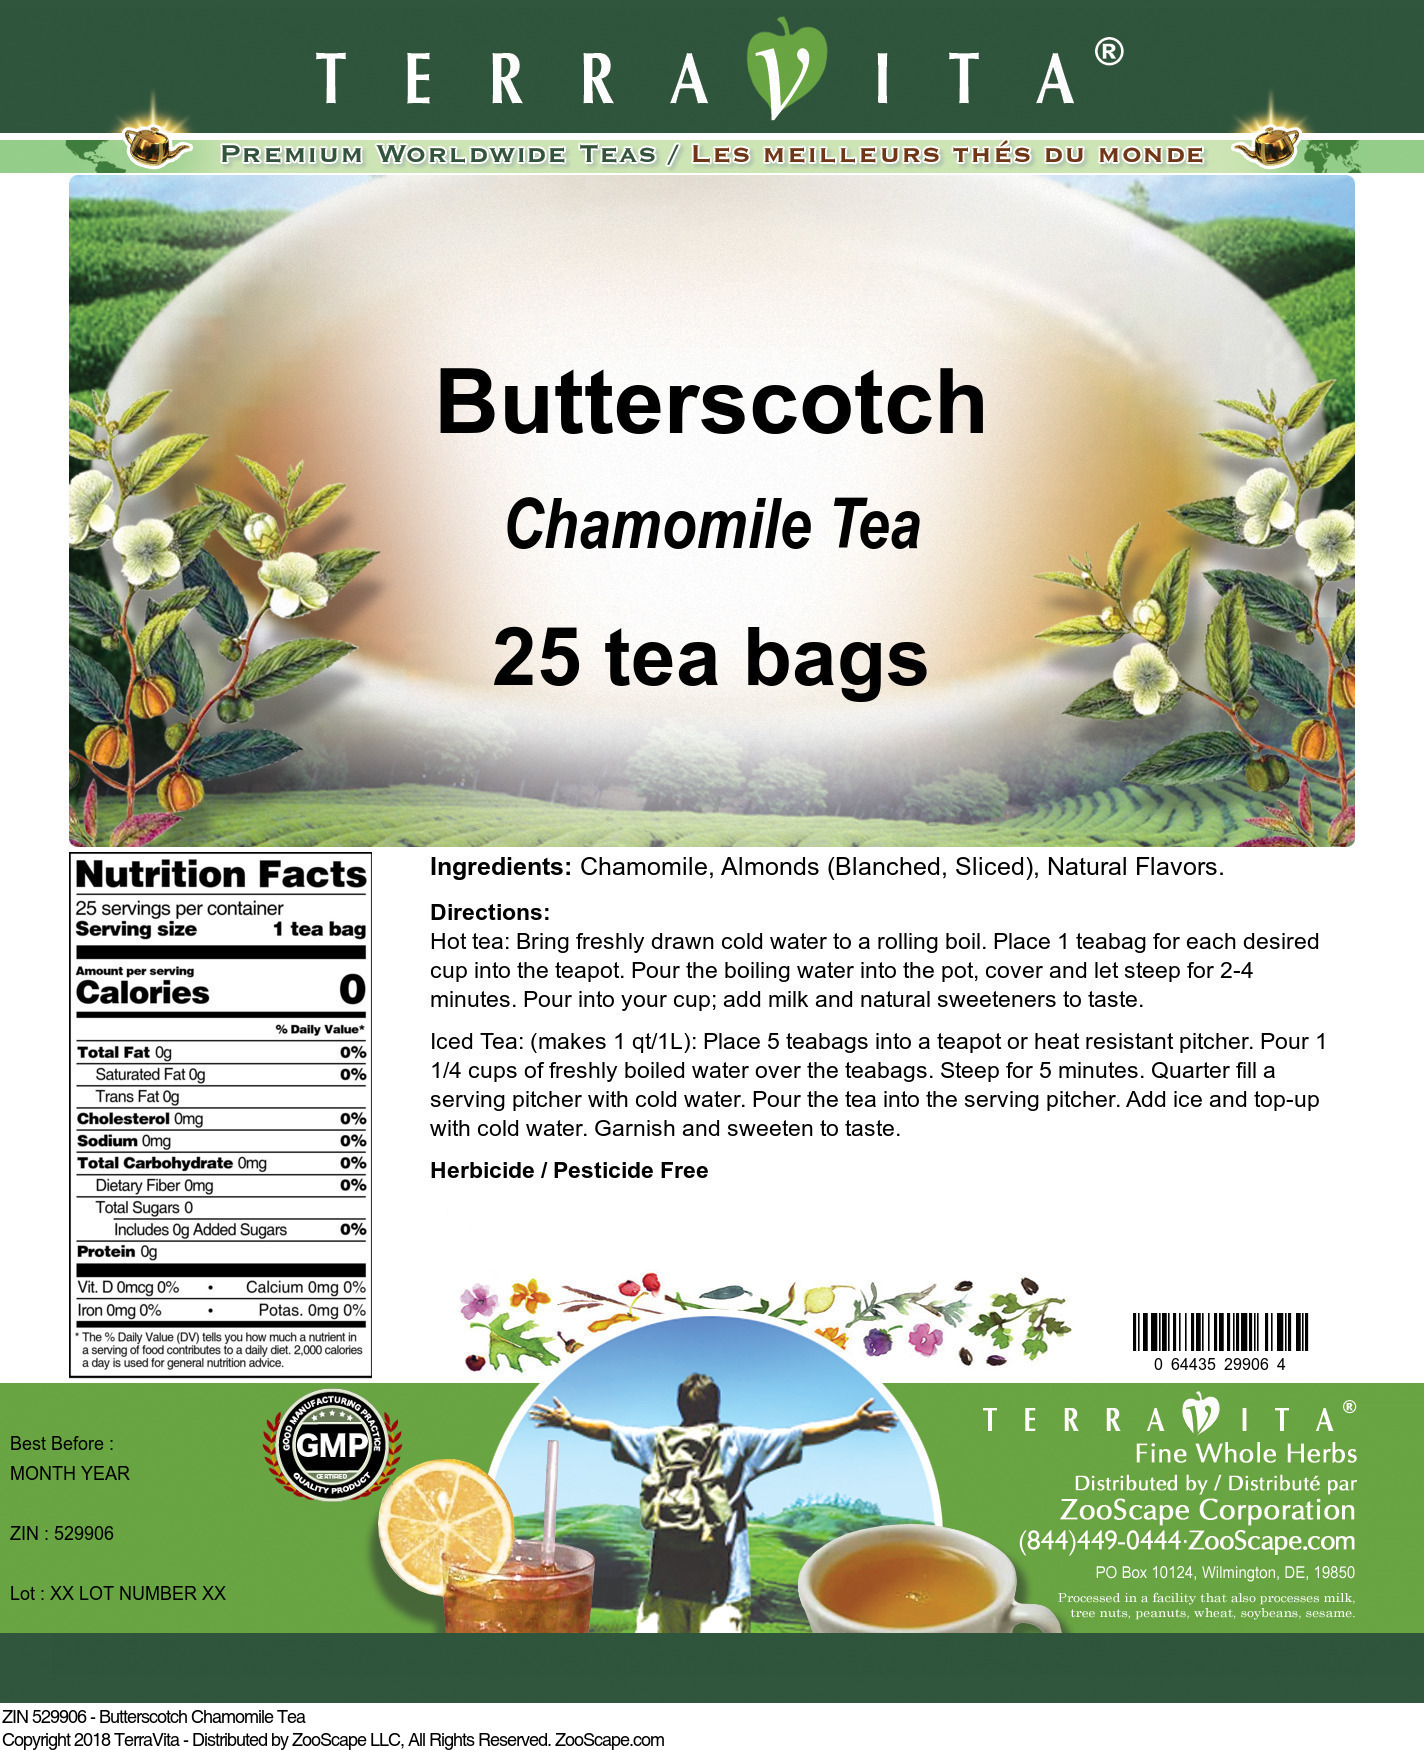 Butterscotch Chamomile Tea - Label